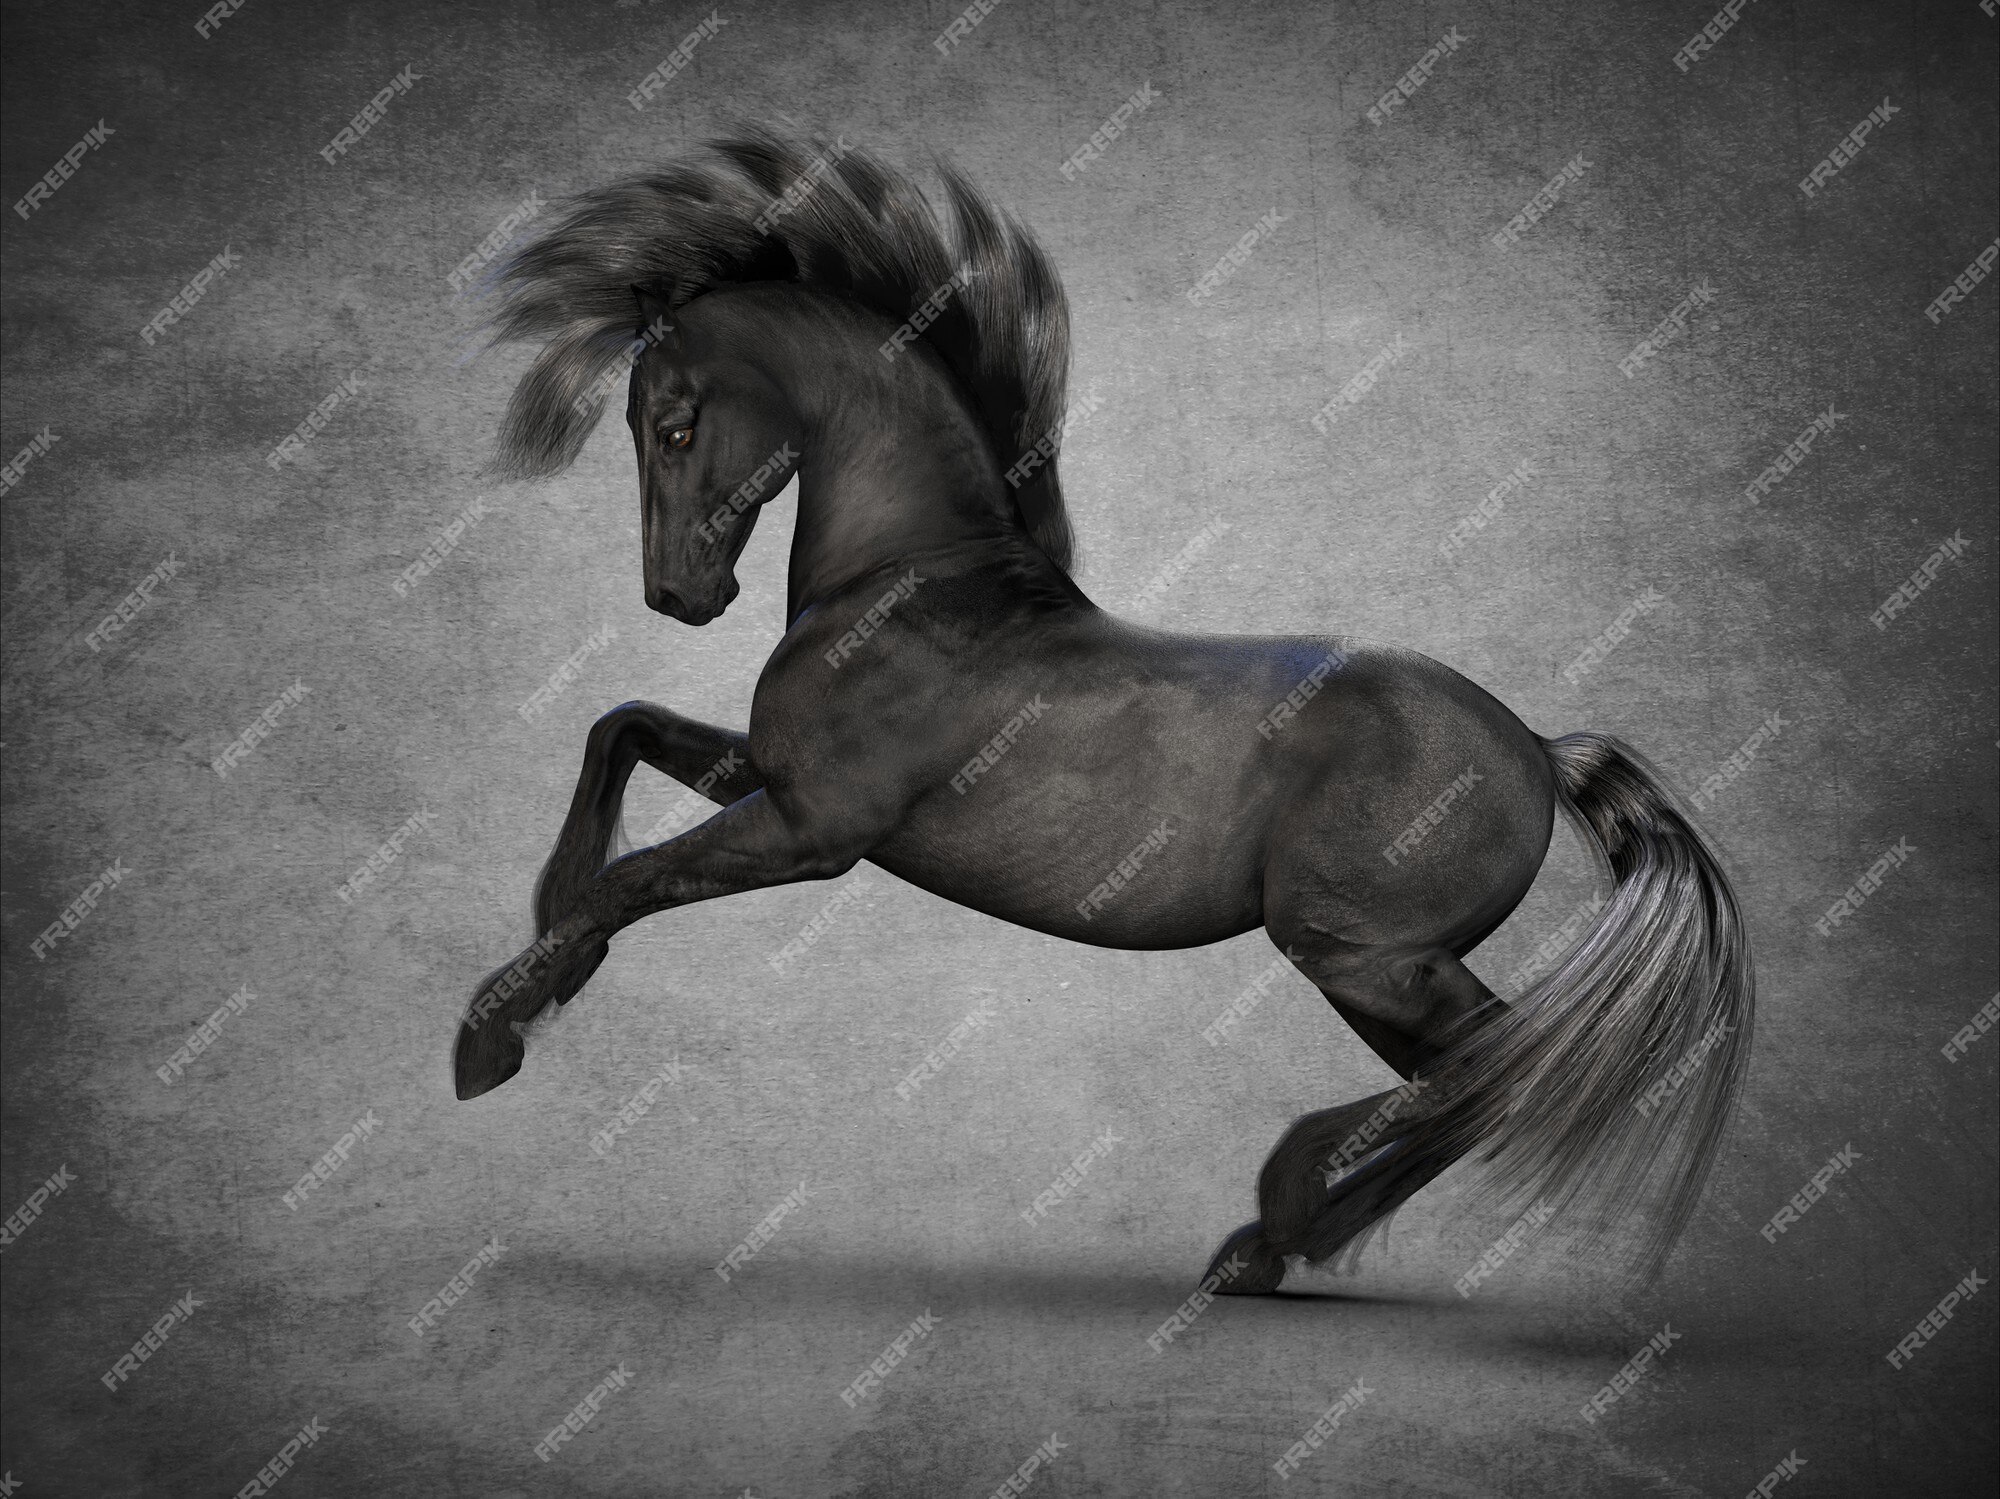 Với hình ảnh về con ngựa đen, chúng tôi sẽ đưa bạn đến với một thế giới cổ tích, nơi mà sức mạnh và sự bền bỉ của con ngựa được tôn vinh. Hãy cùng chiêm ngưỡng những hình ảnh đẹp mắt và đầy cảm hứng của chúng tôi!